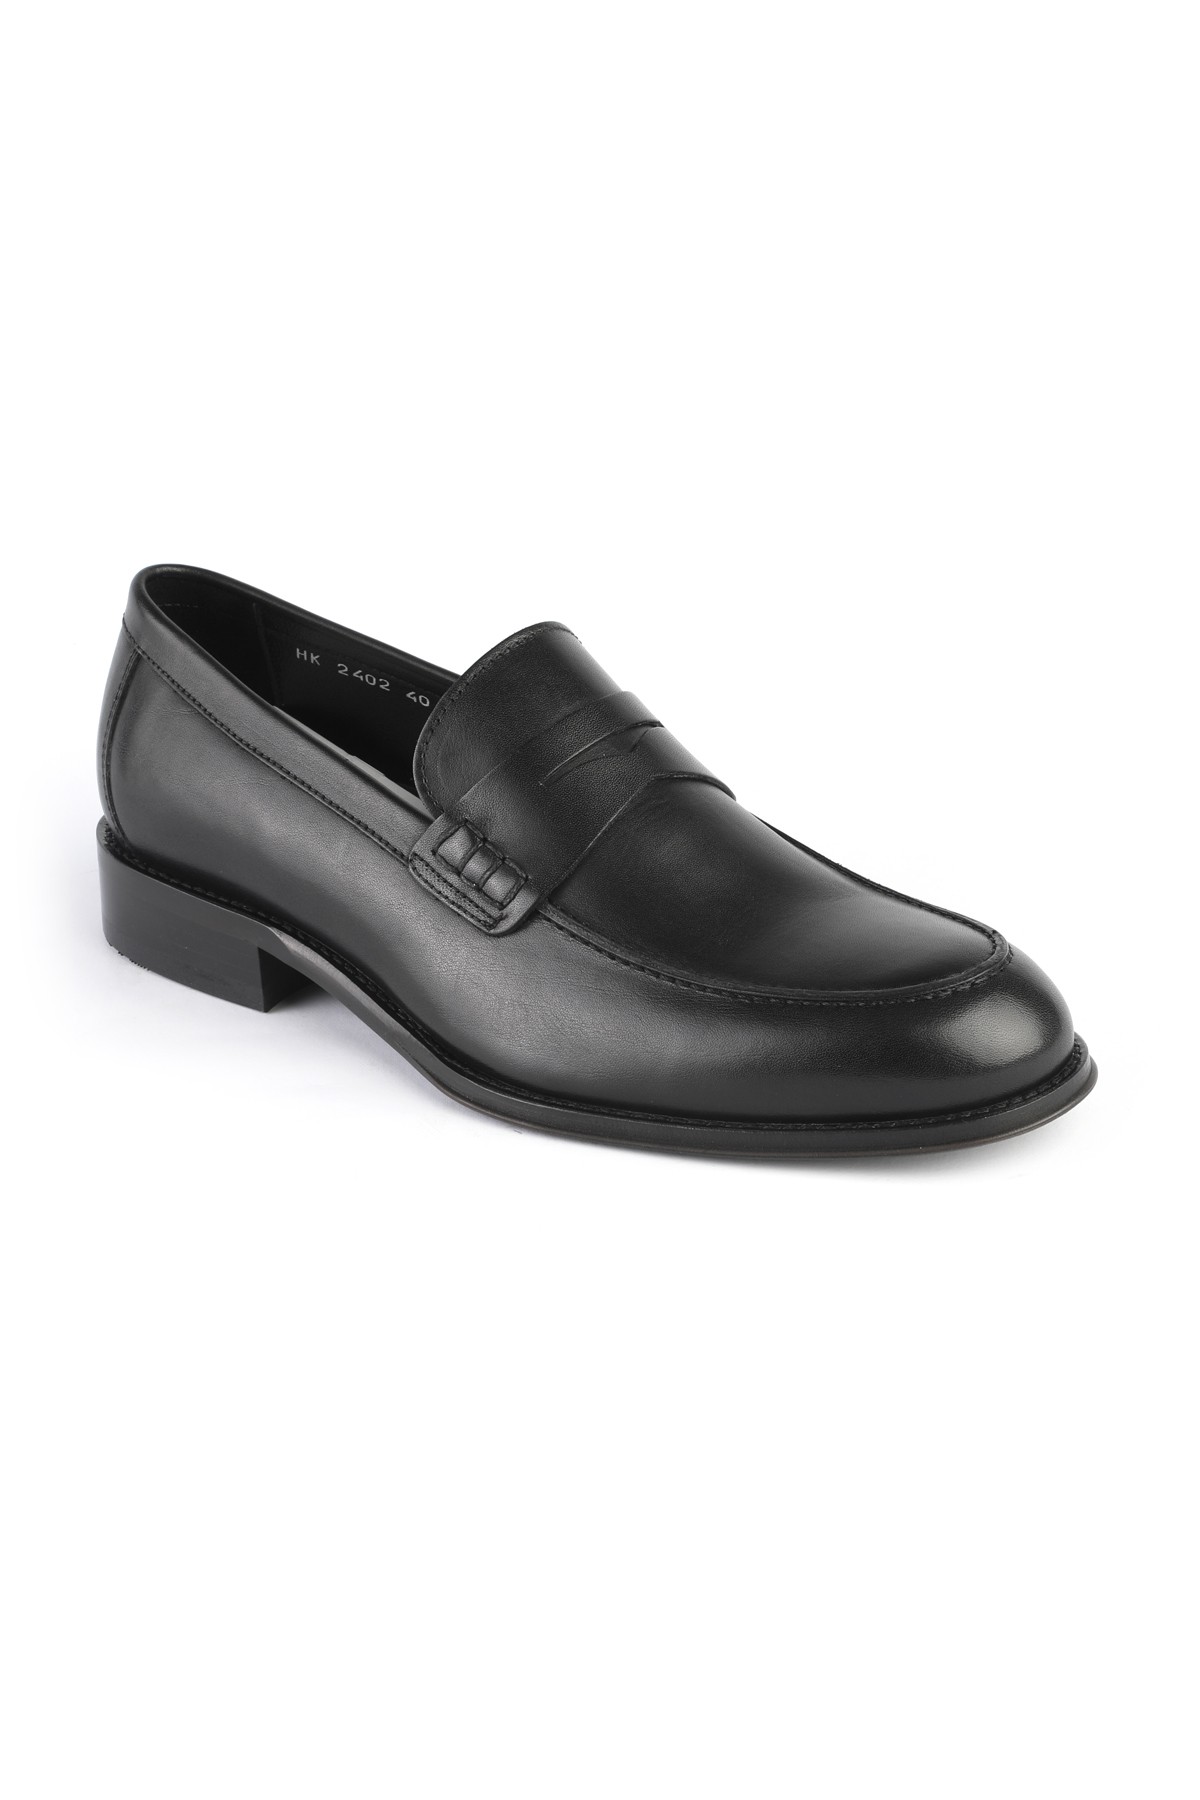 Libero 2402 Loafer Erkek Ayakkabı KAHVE - Siyah